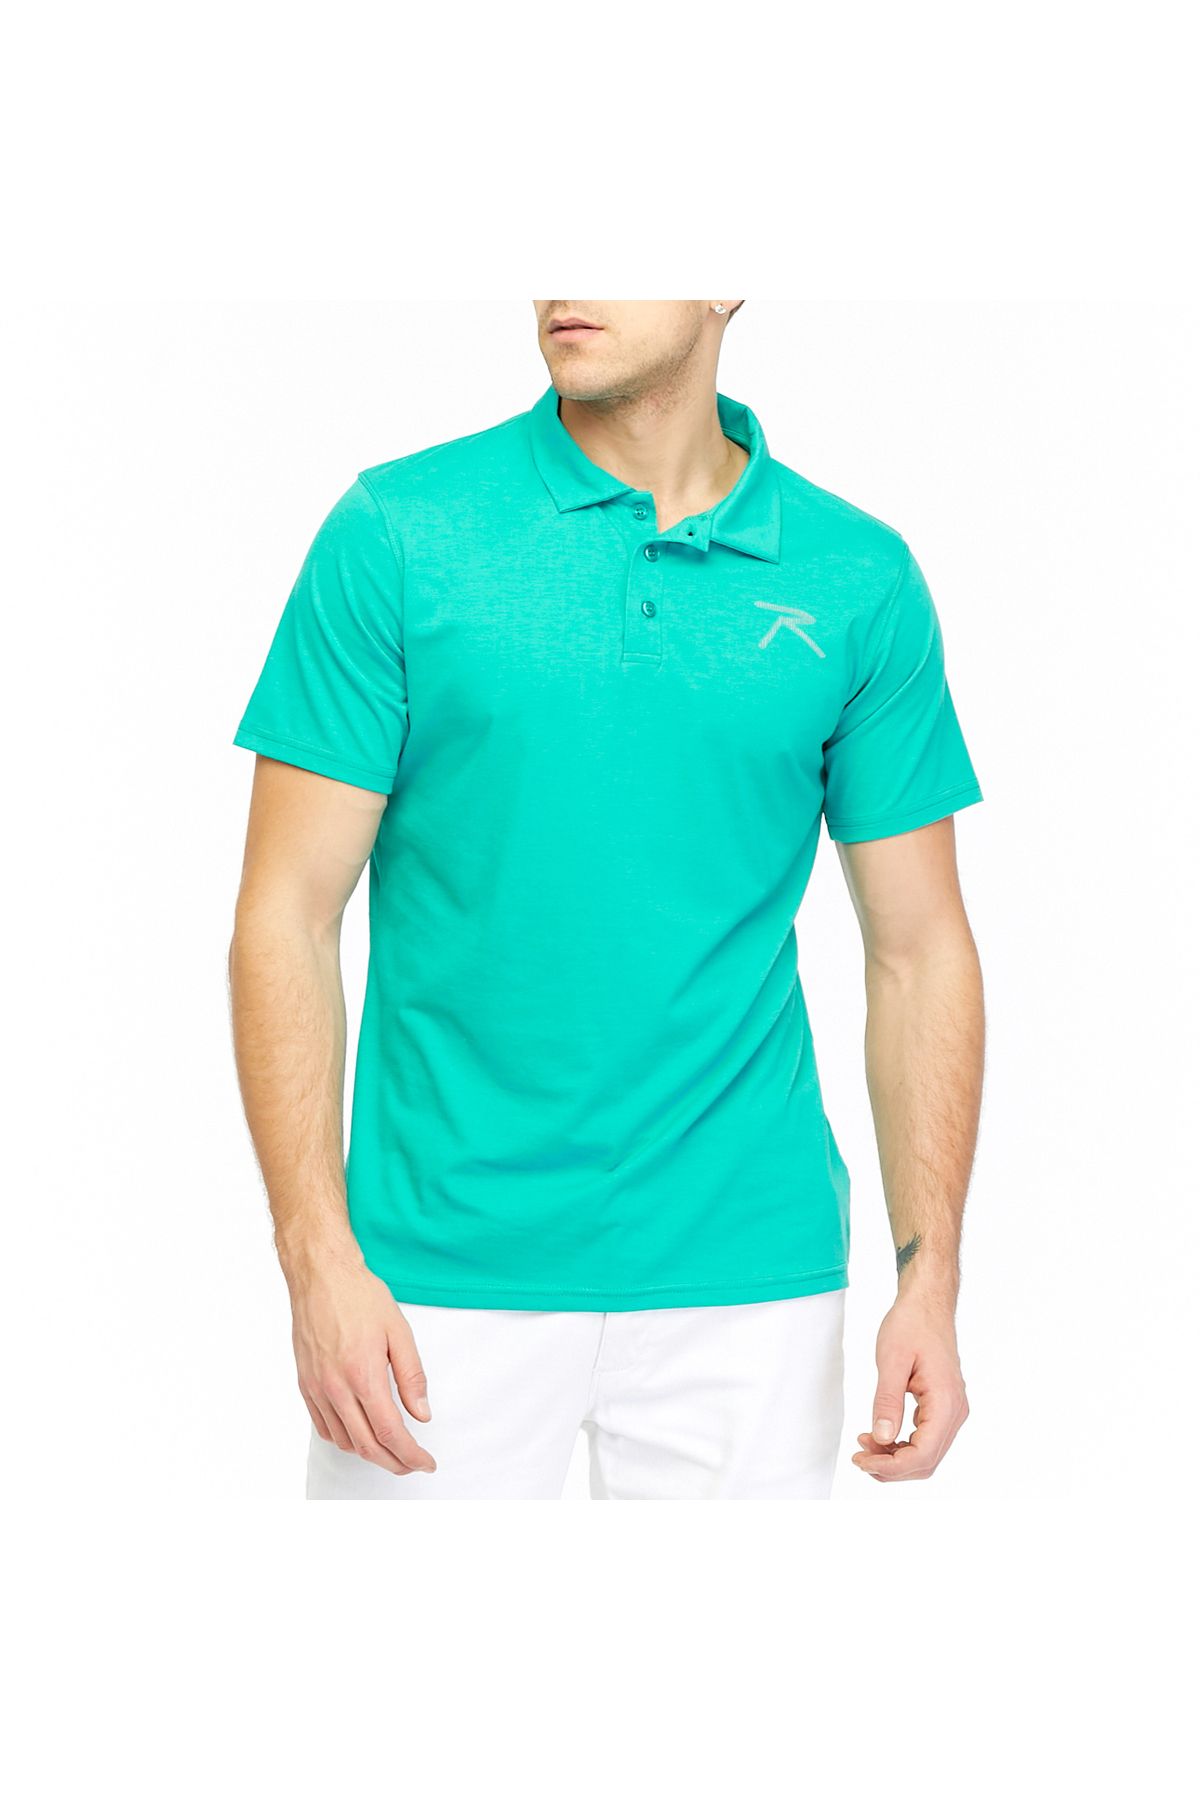 raru Erkek Kısa Kollu Polo T-shirt Ostendo Yeşil